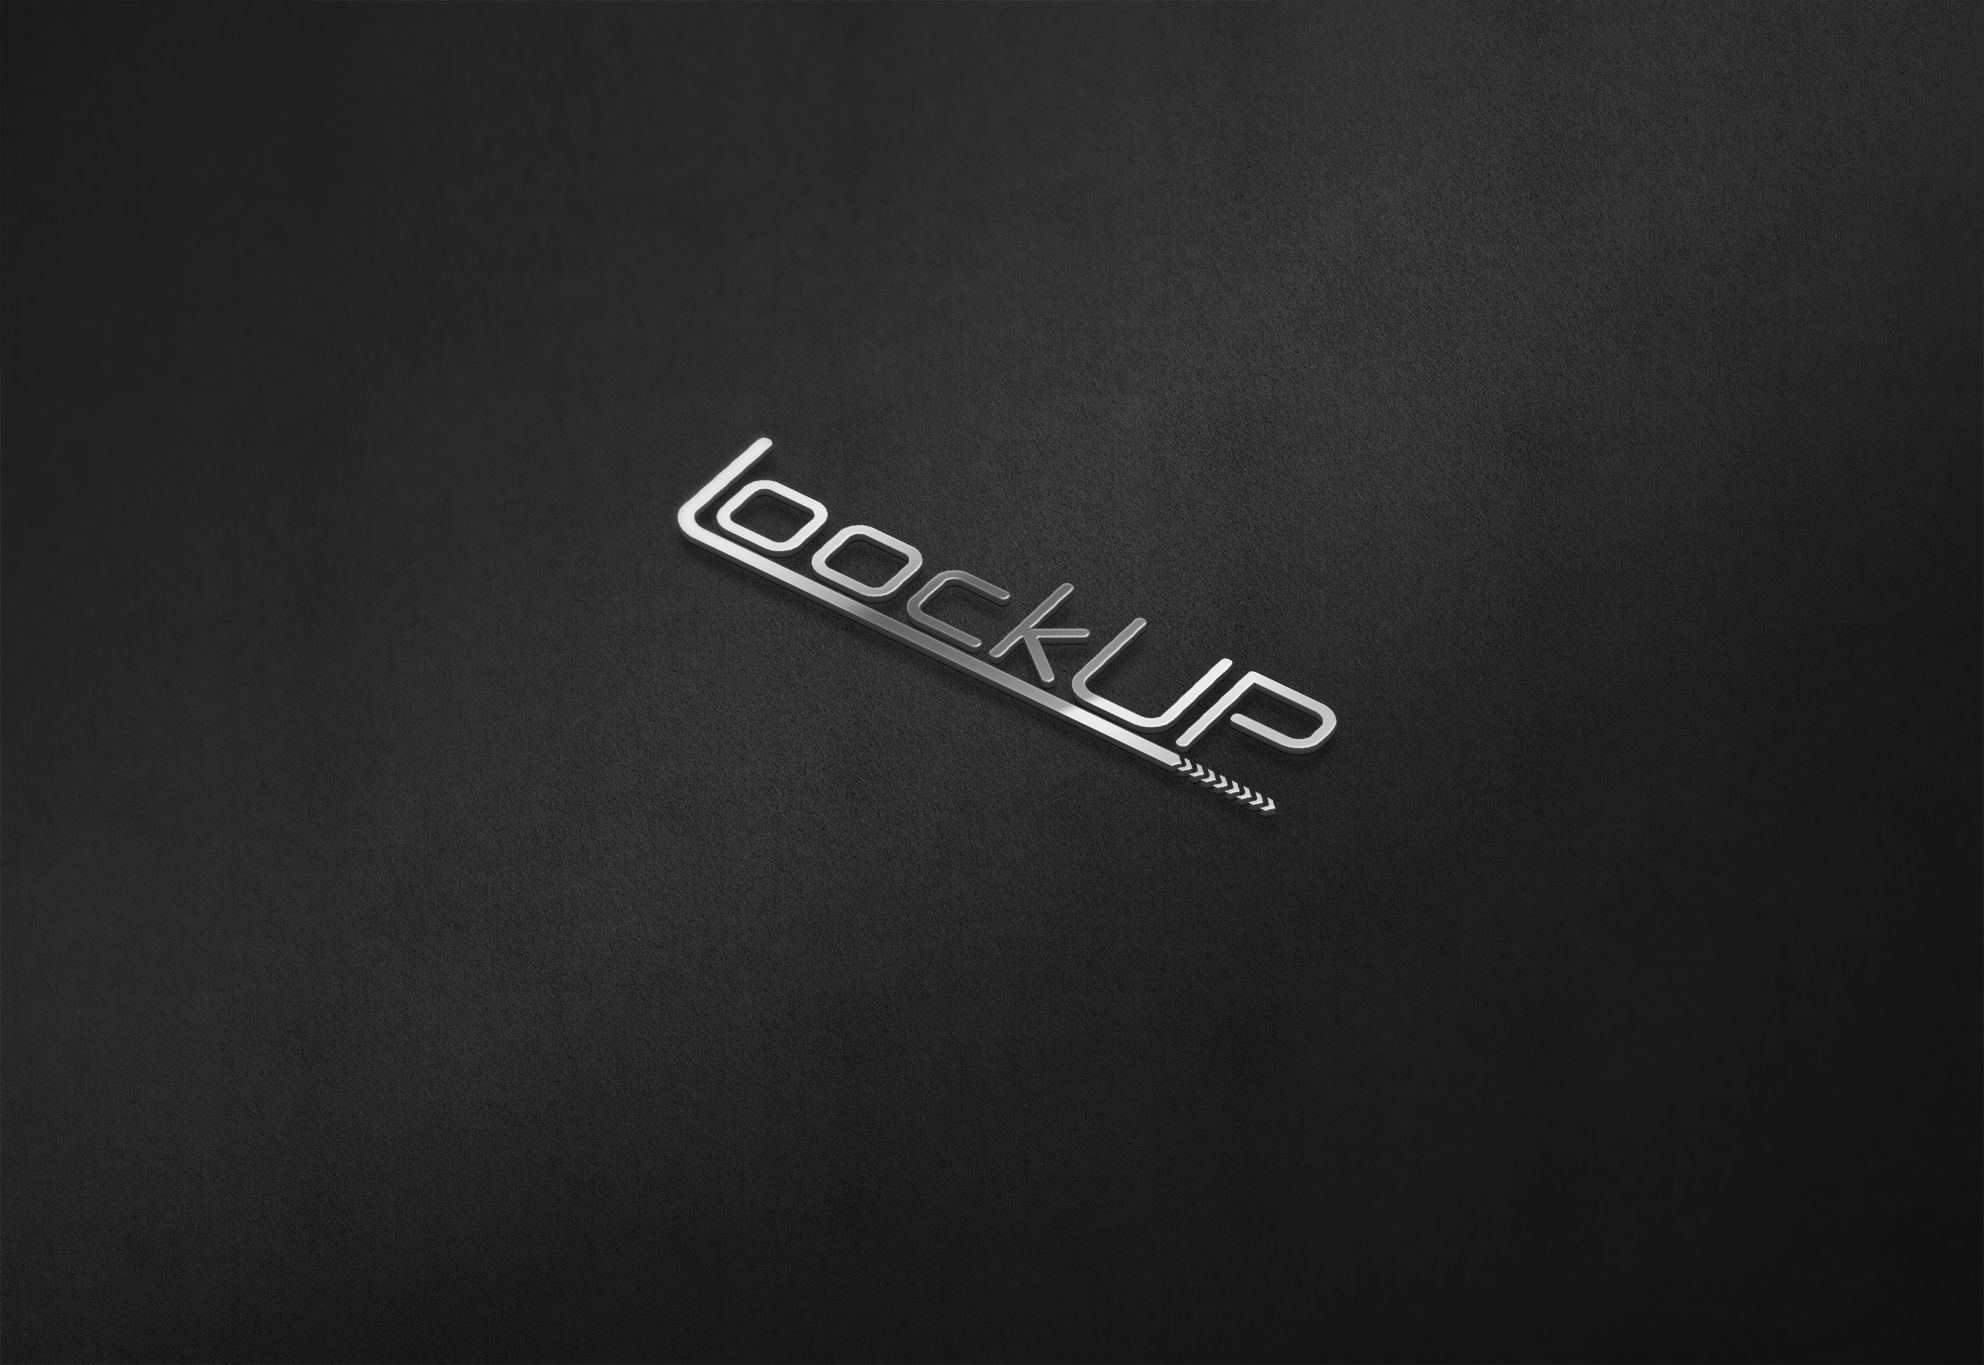 Логотип для Look Up - дизайнер comicdm